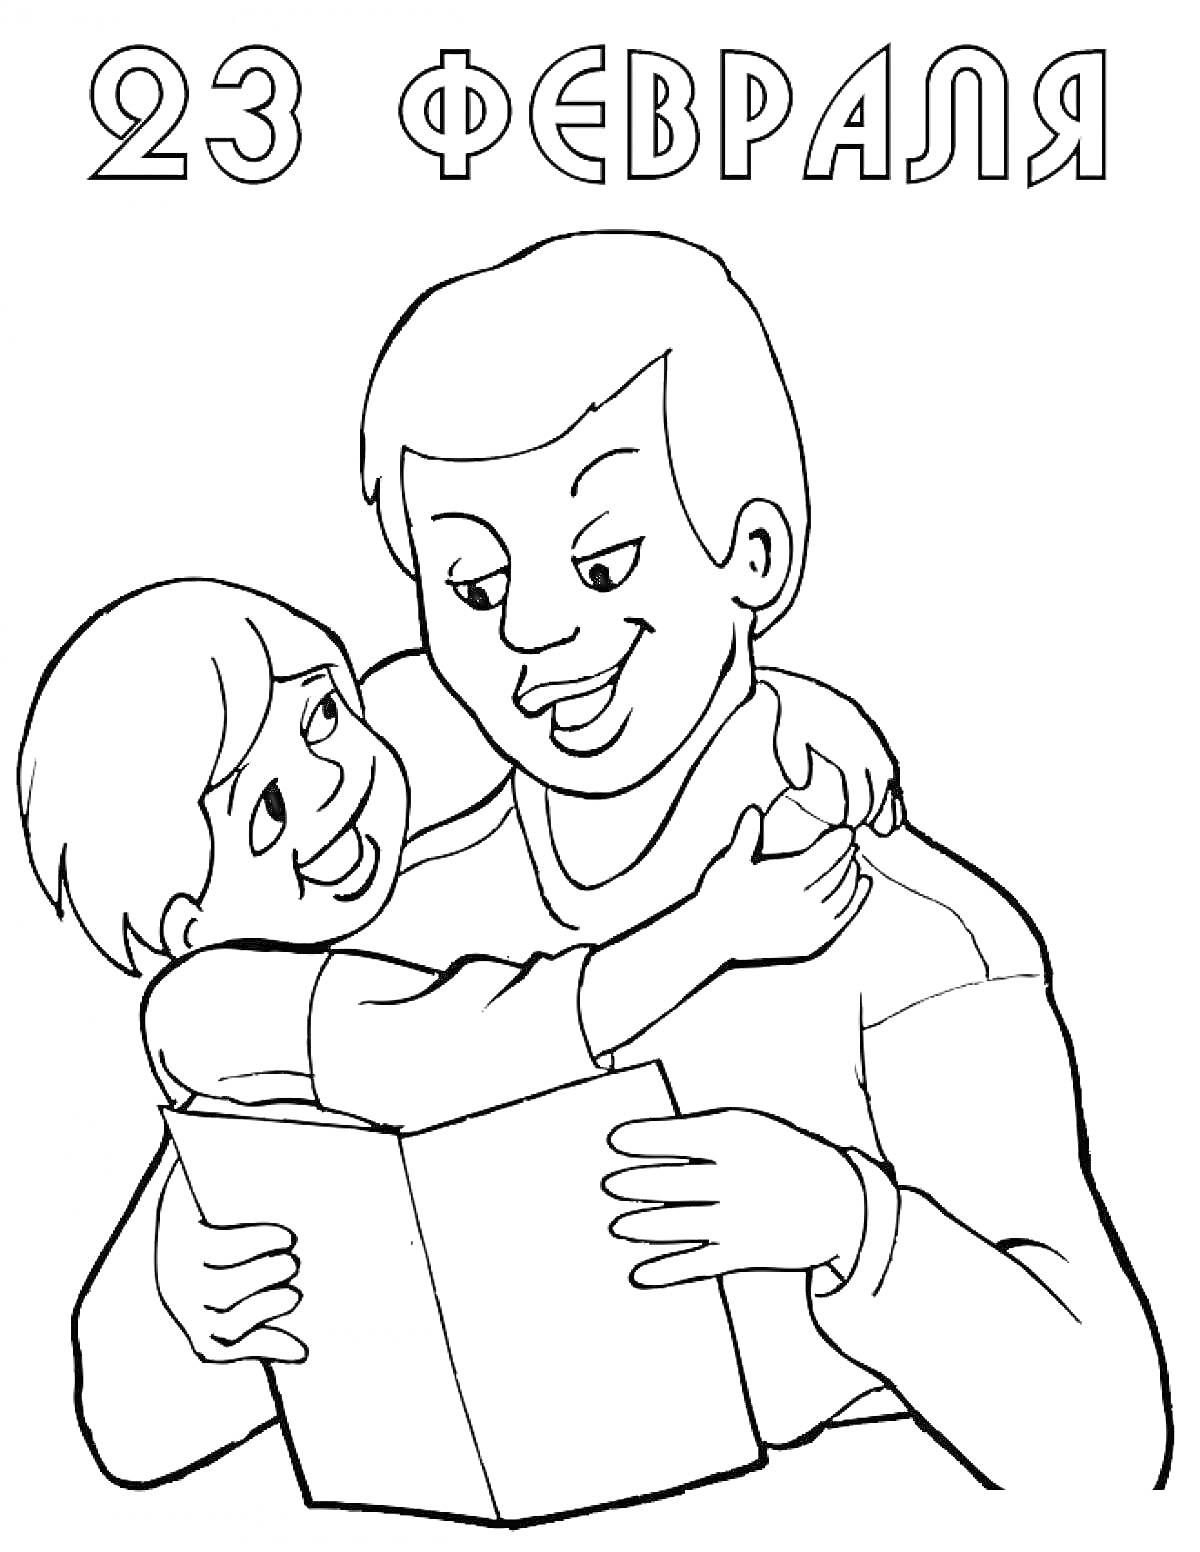 23 февраля, взрослый и ребенок, ребенок держит книгу, взрослый обнимает ребенка